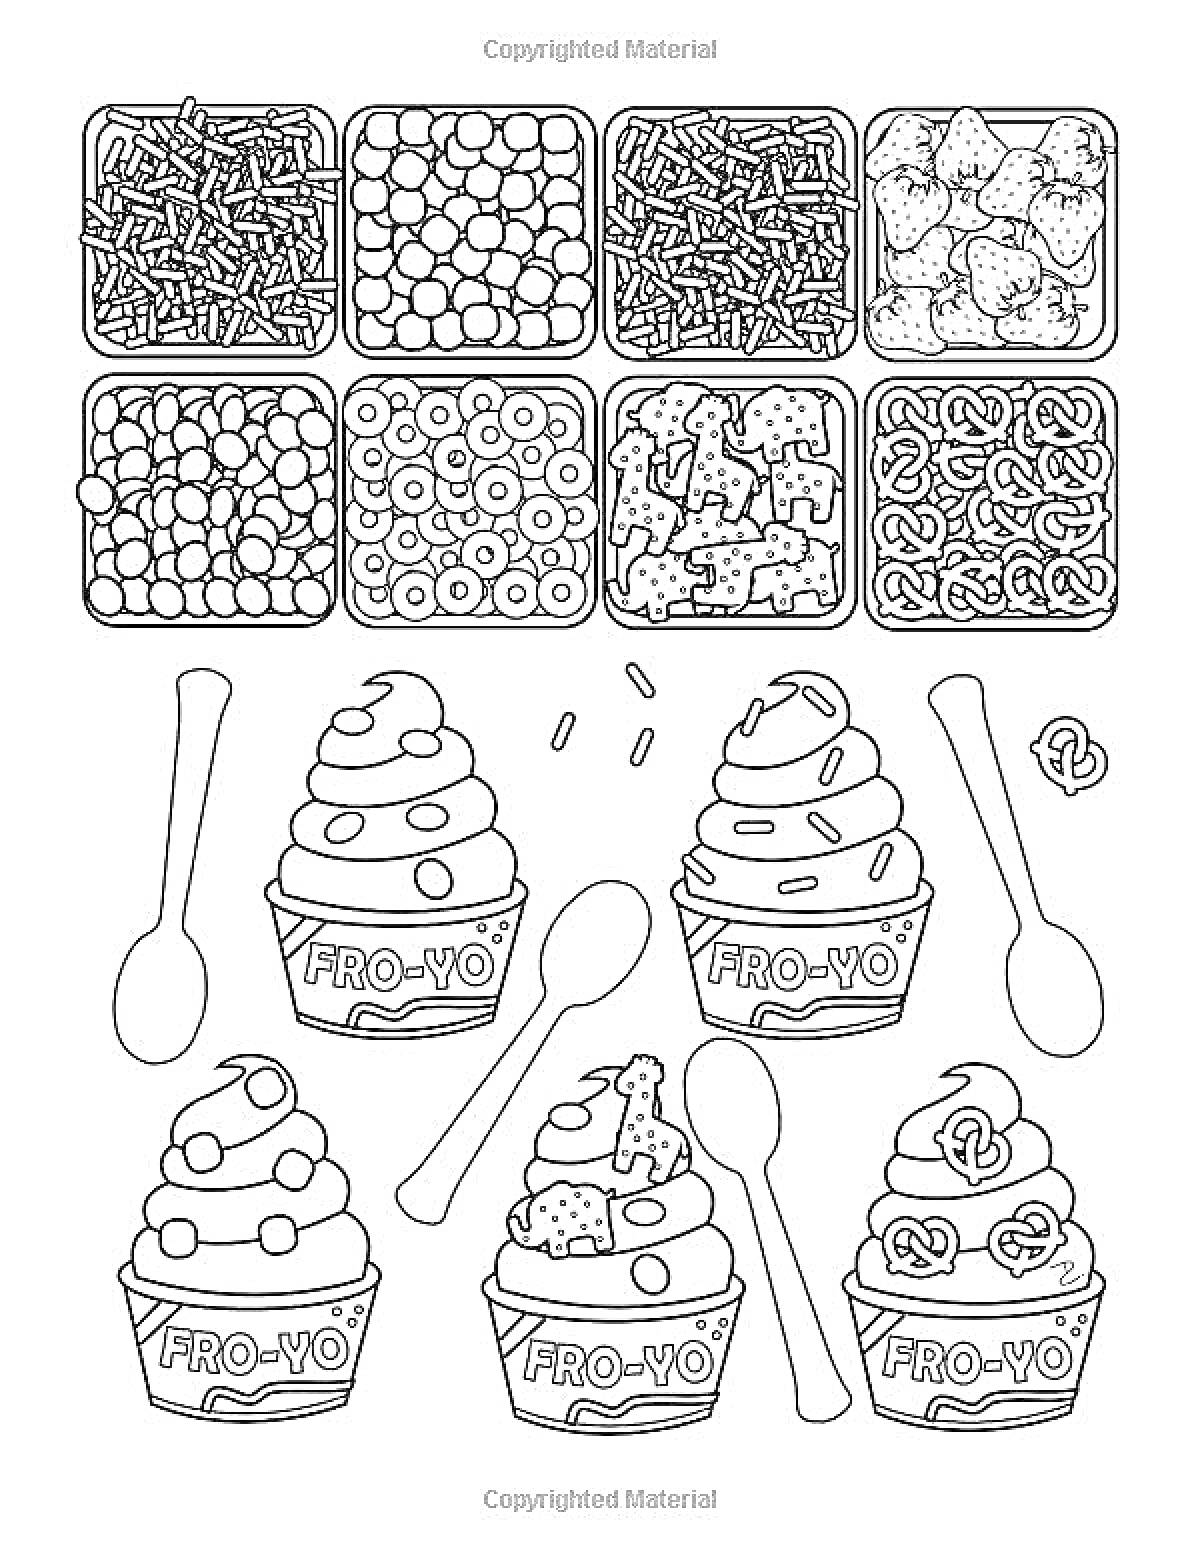 Раскраска Йогурт-мороженое с ложками и контейнерами с различными начинками (шоколадная стружка, ягоды, кусочки фруктов, кольца печенья, конфеты, мини-печенья, кусочки шоколада, крендельки)